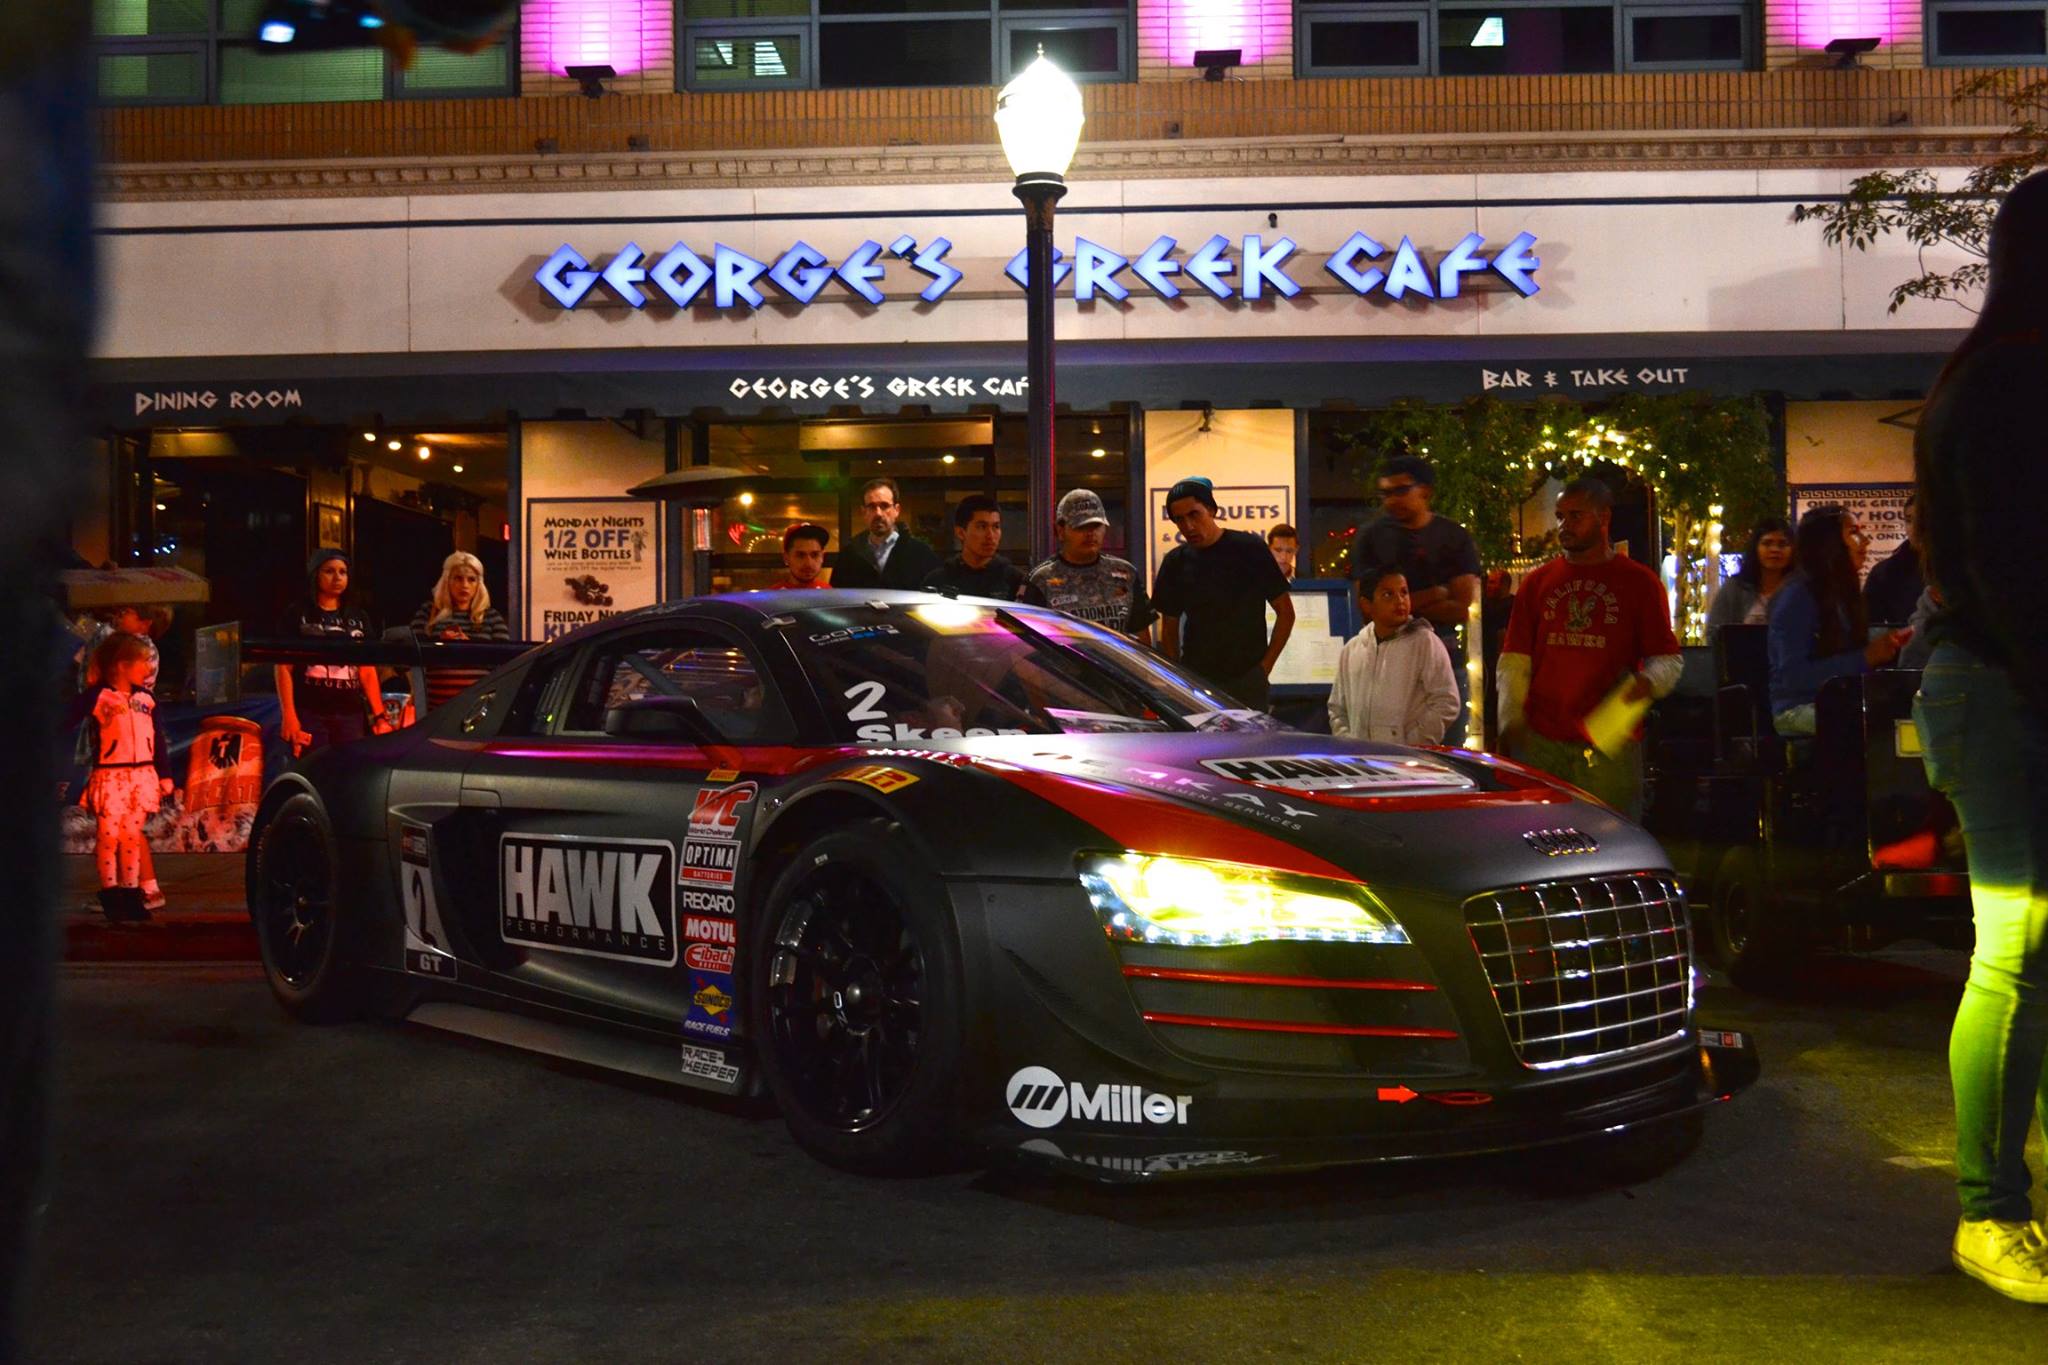 CRP Racing Audi R8 LMS ultra